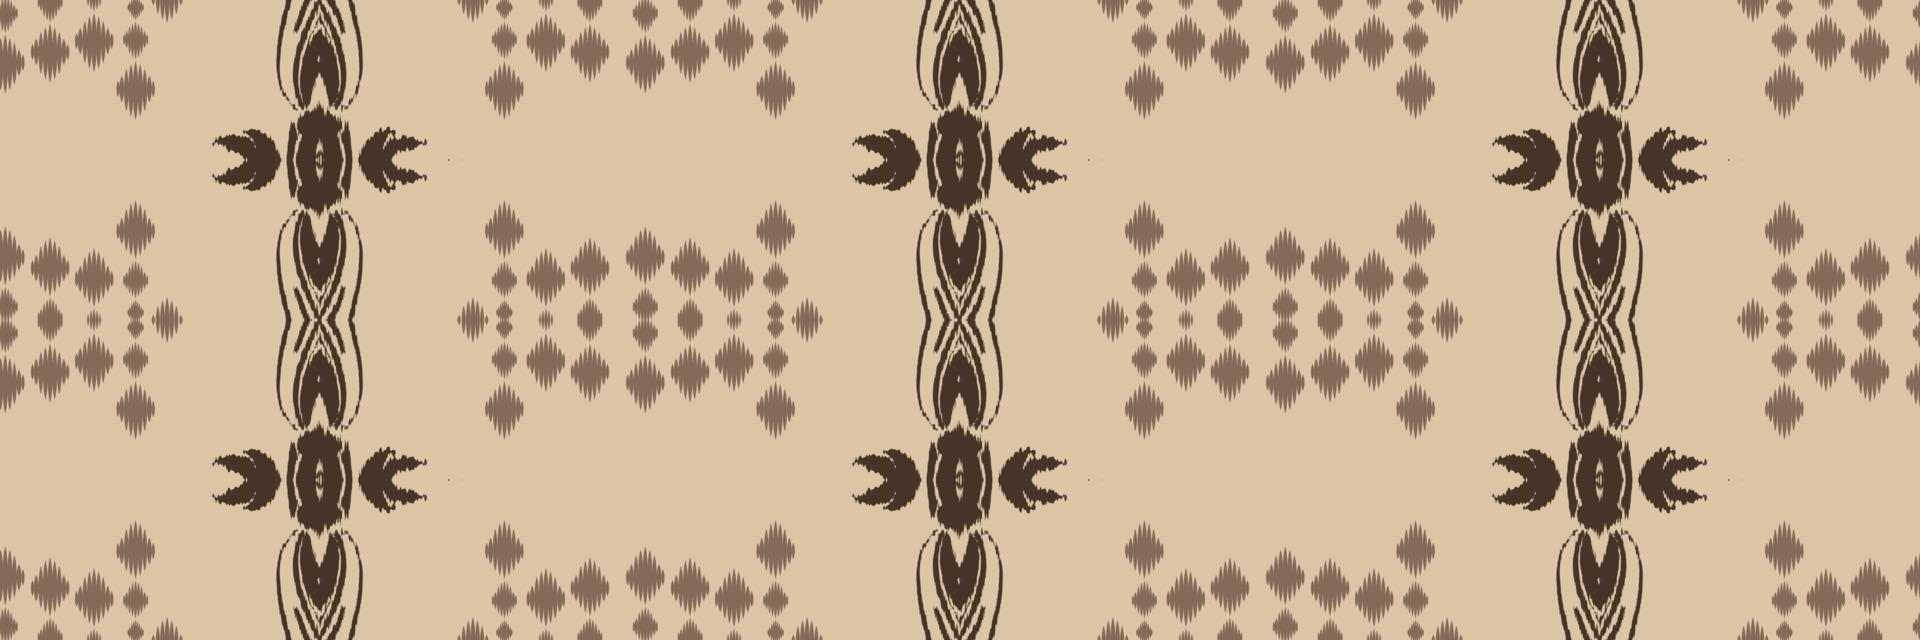 batik têxtil étnico ikat flores sem costura padrão design de vetor digital para impressão saree kurti borneo tecido borda escova símbolos amostras elegantes